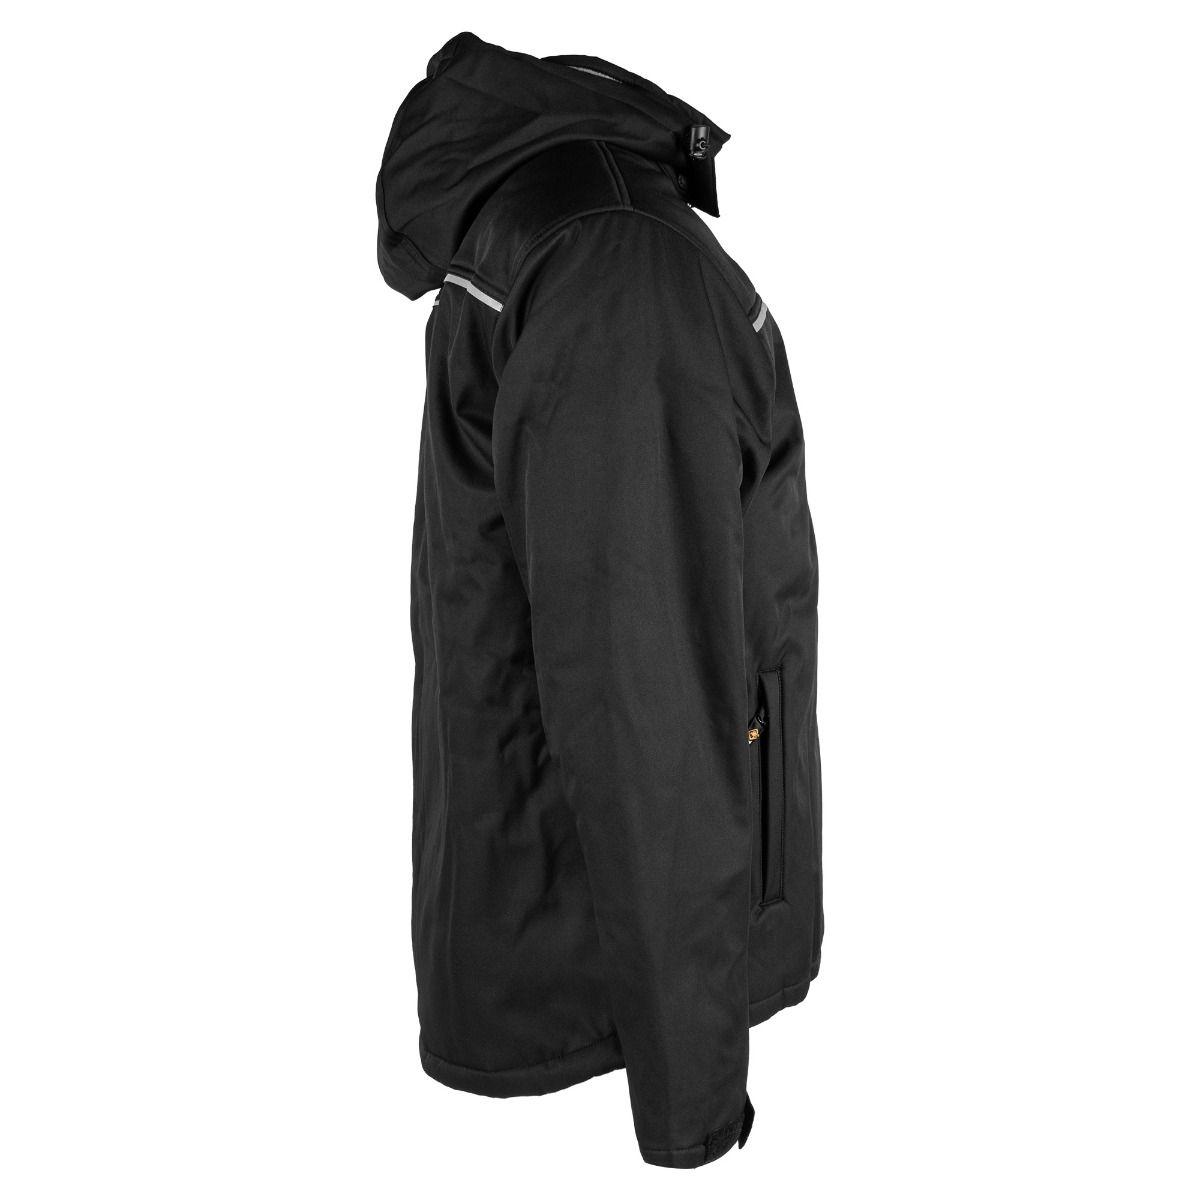 Manteau à capuche chauffant pour Homme - STORM: Veste